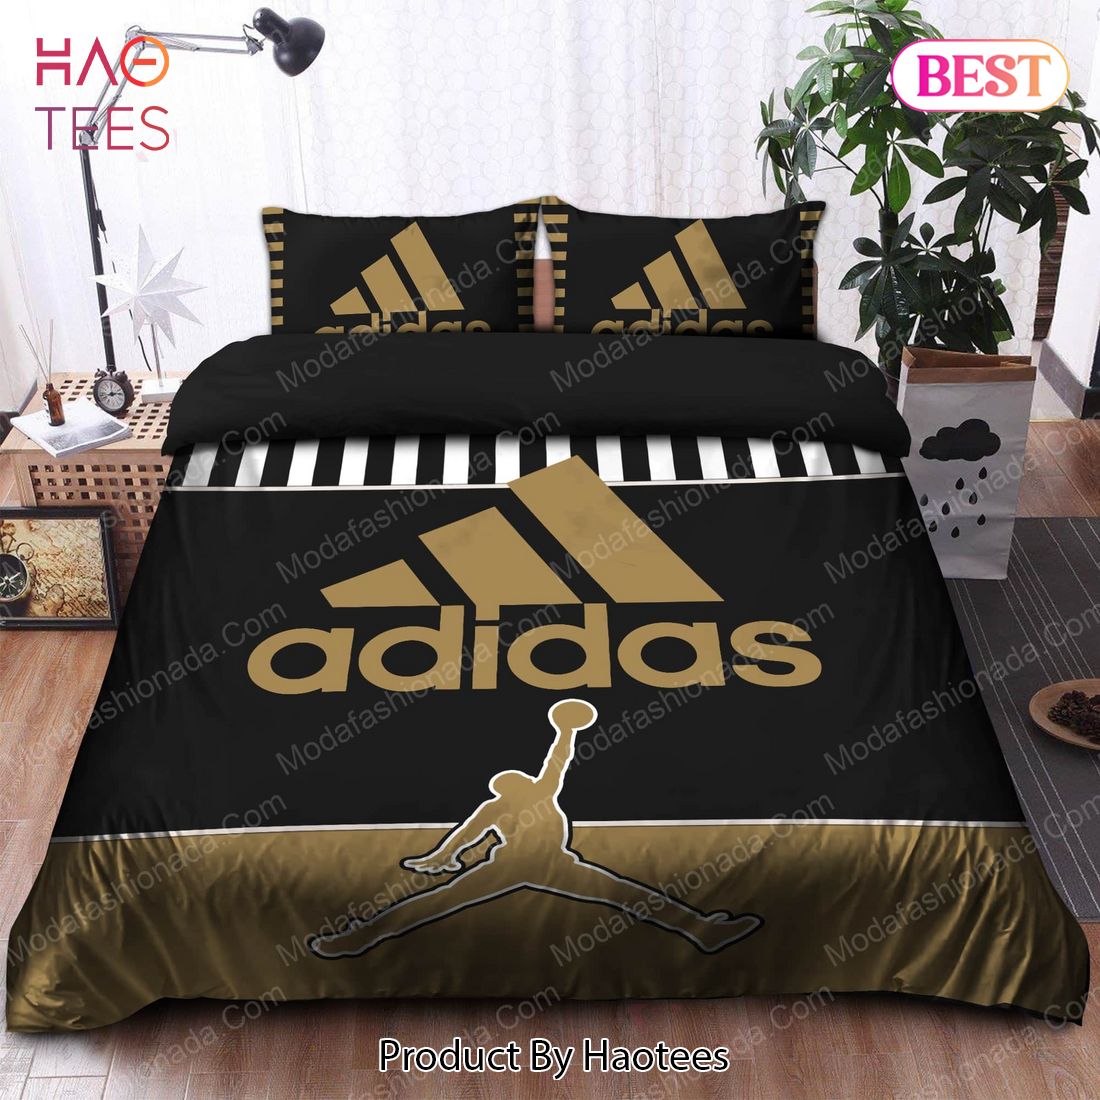 Buy Adidas Basketball Bedding Sets Bed Sets, Bedroom Sets, Comforter Sets, Duvet Cover, Bedspread